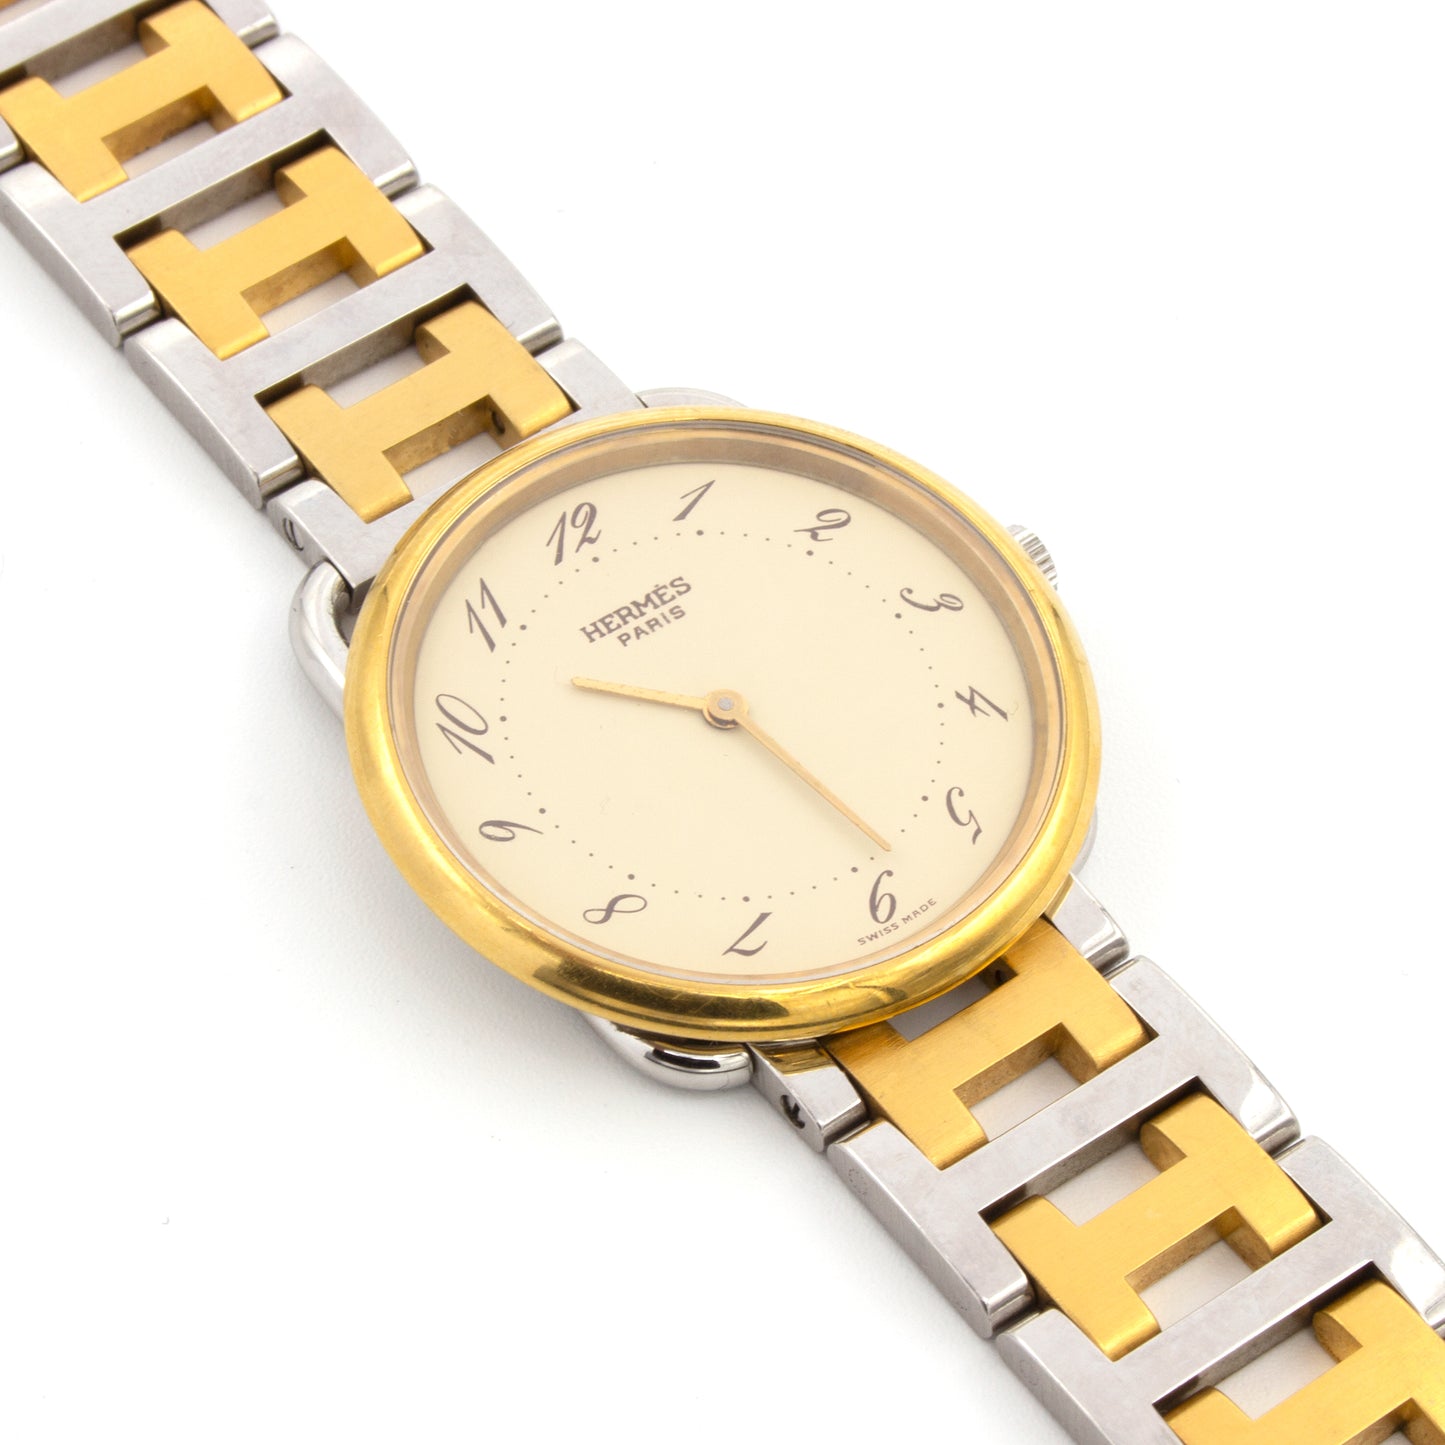 Hermes Arceau 33mm watch